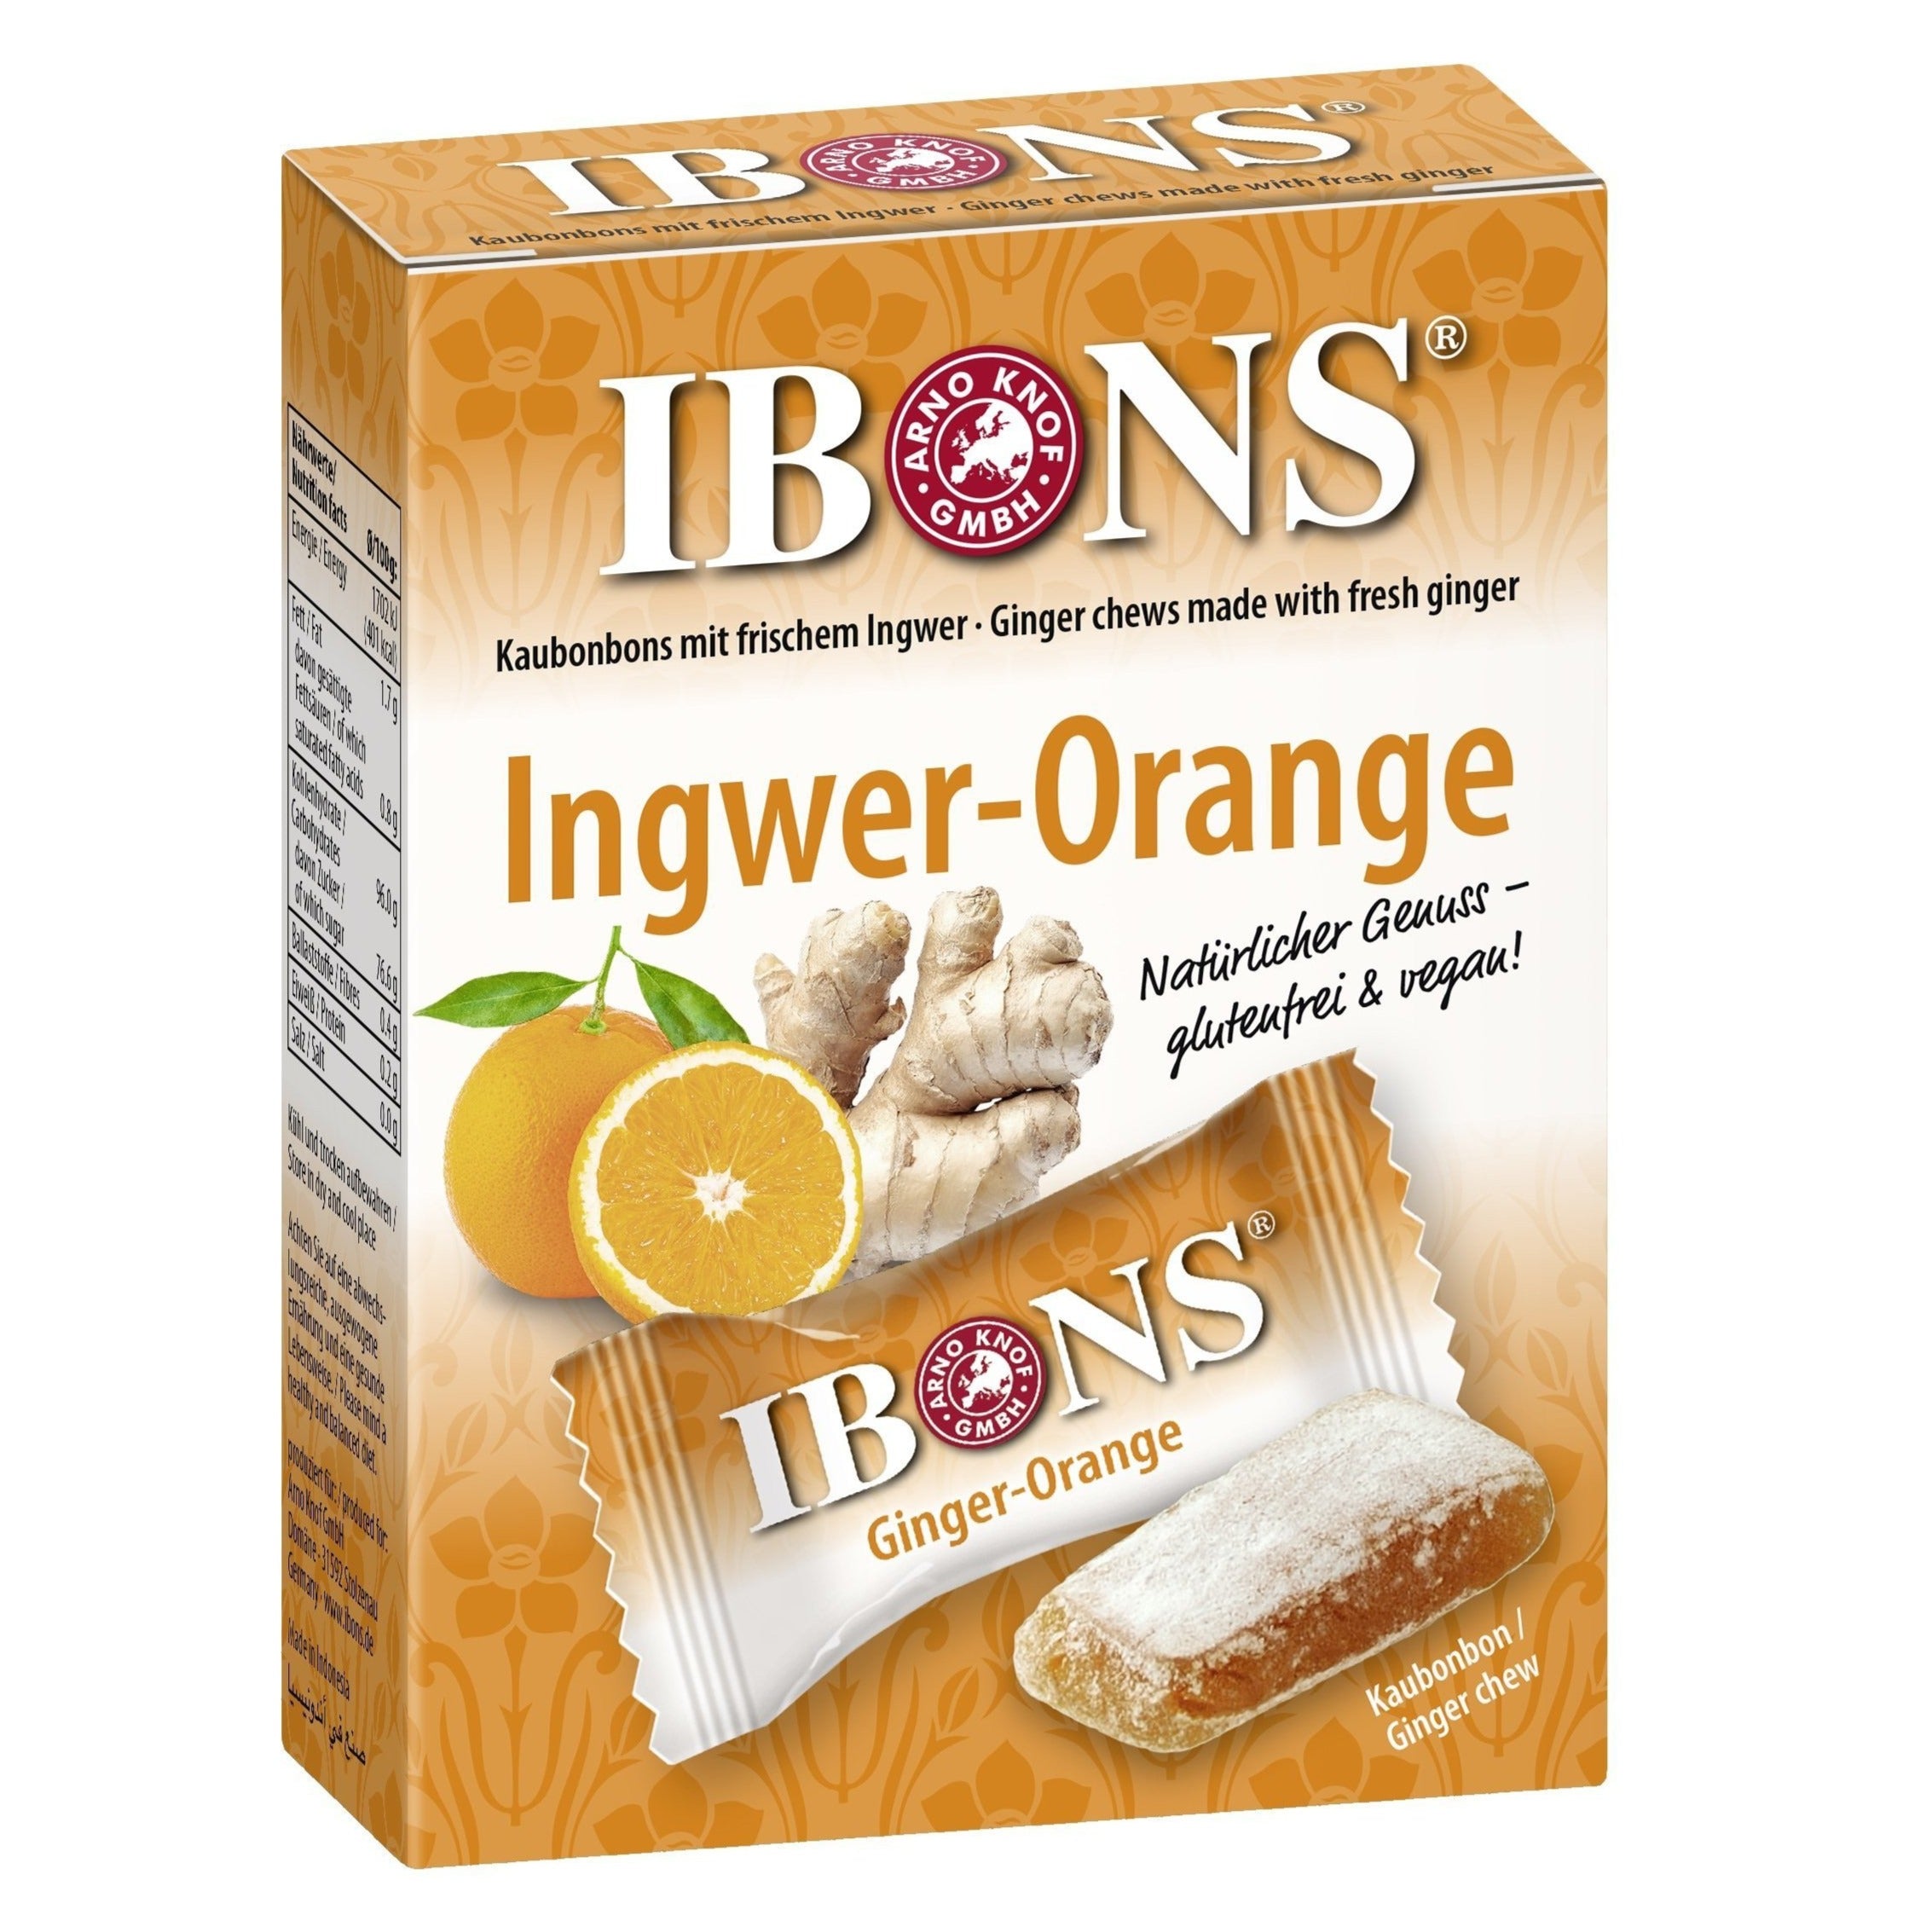 Image of Ingwer-Orange Bonbon - 60g